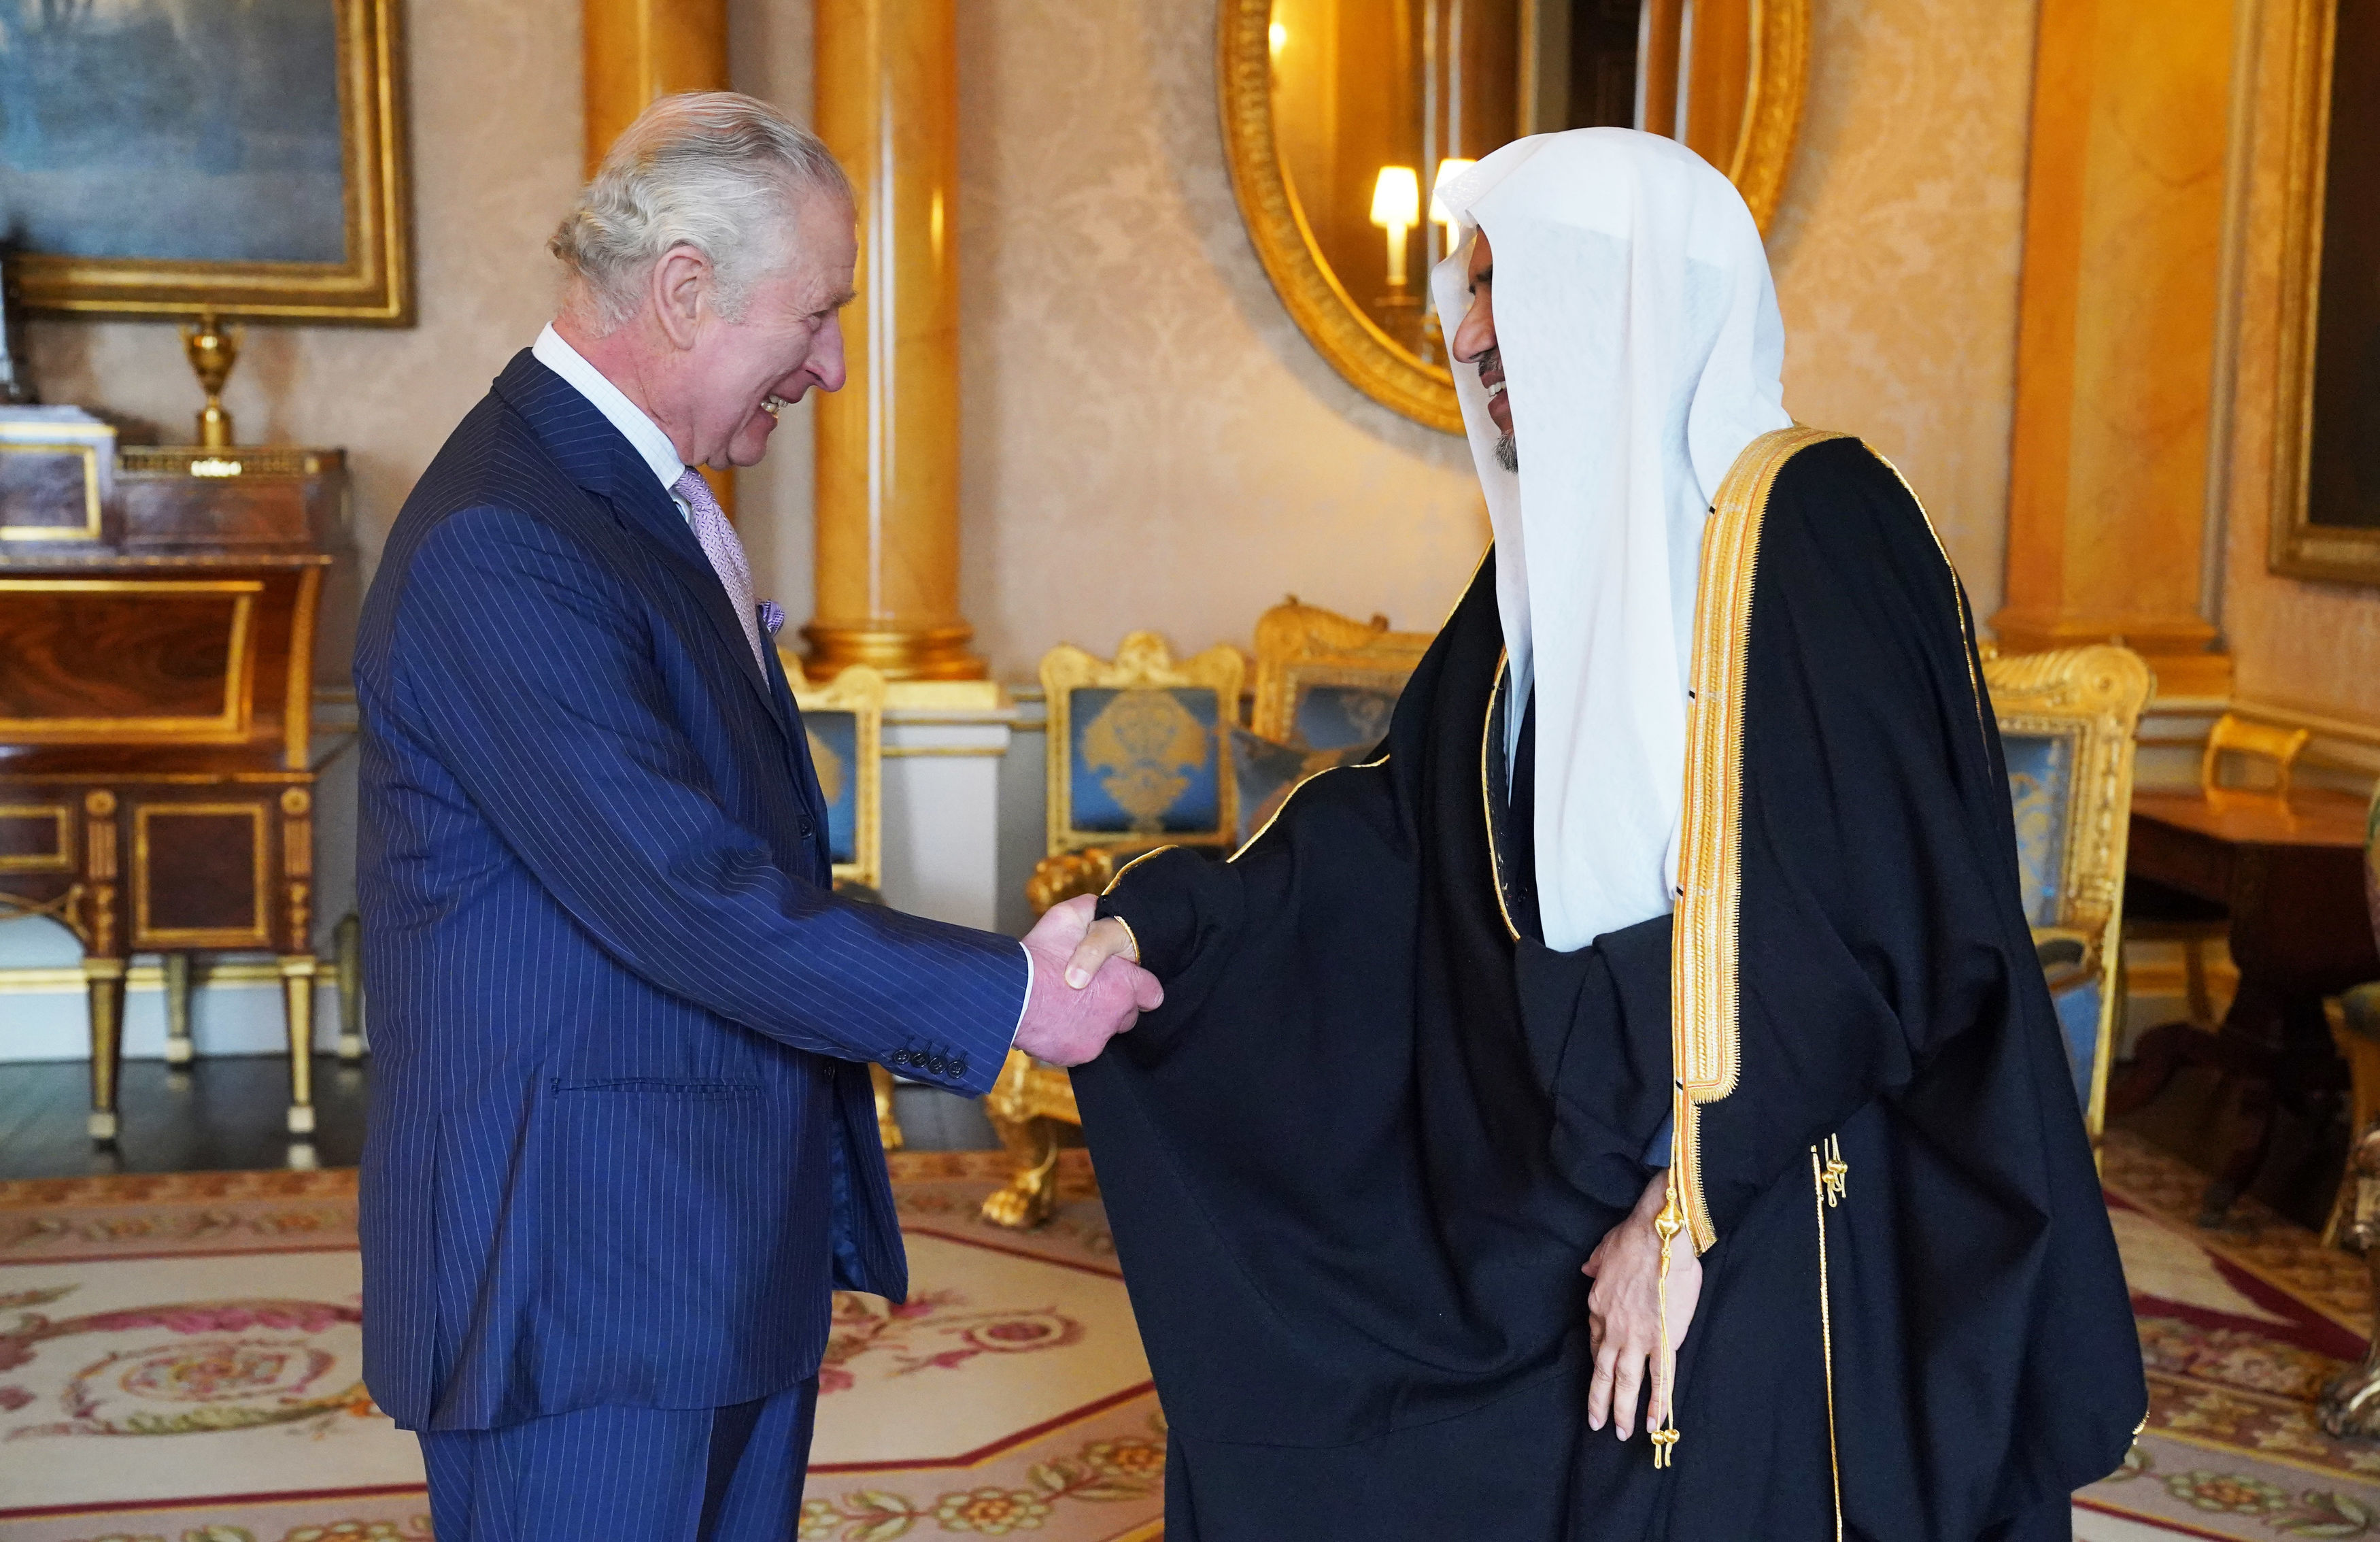 Lors du premier accueil officiel d'une personnalité musulmane au palais de Buckingham dans la capitale britannique : Le Roi Charles III reçoit le Secrétaire général de la Ligue islamique mondiale cheikh Mohammad ben AbdelKarim Alissa.